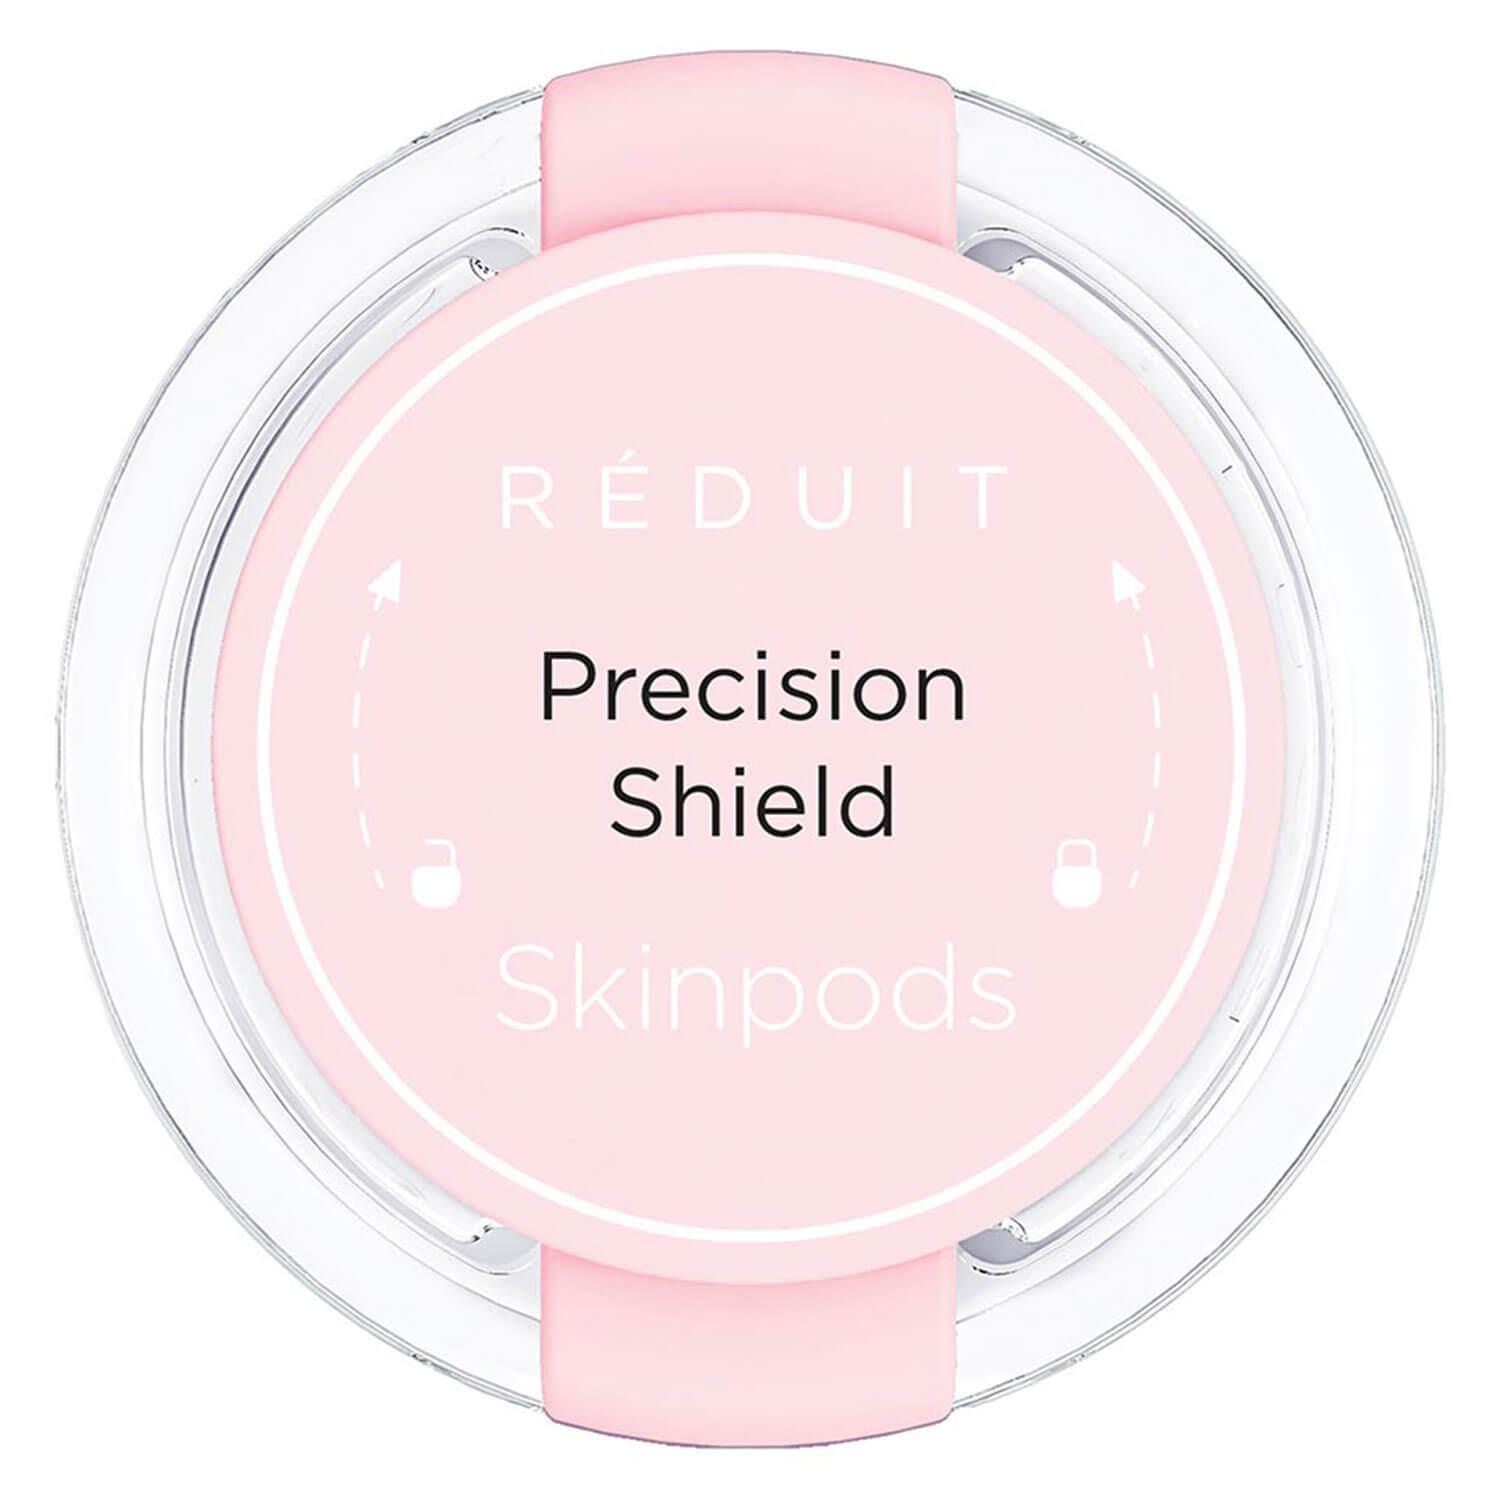 RÉDUIT - Precision Shield Skinpods